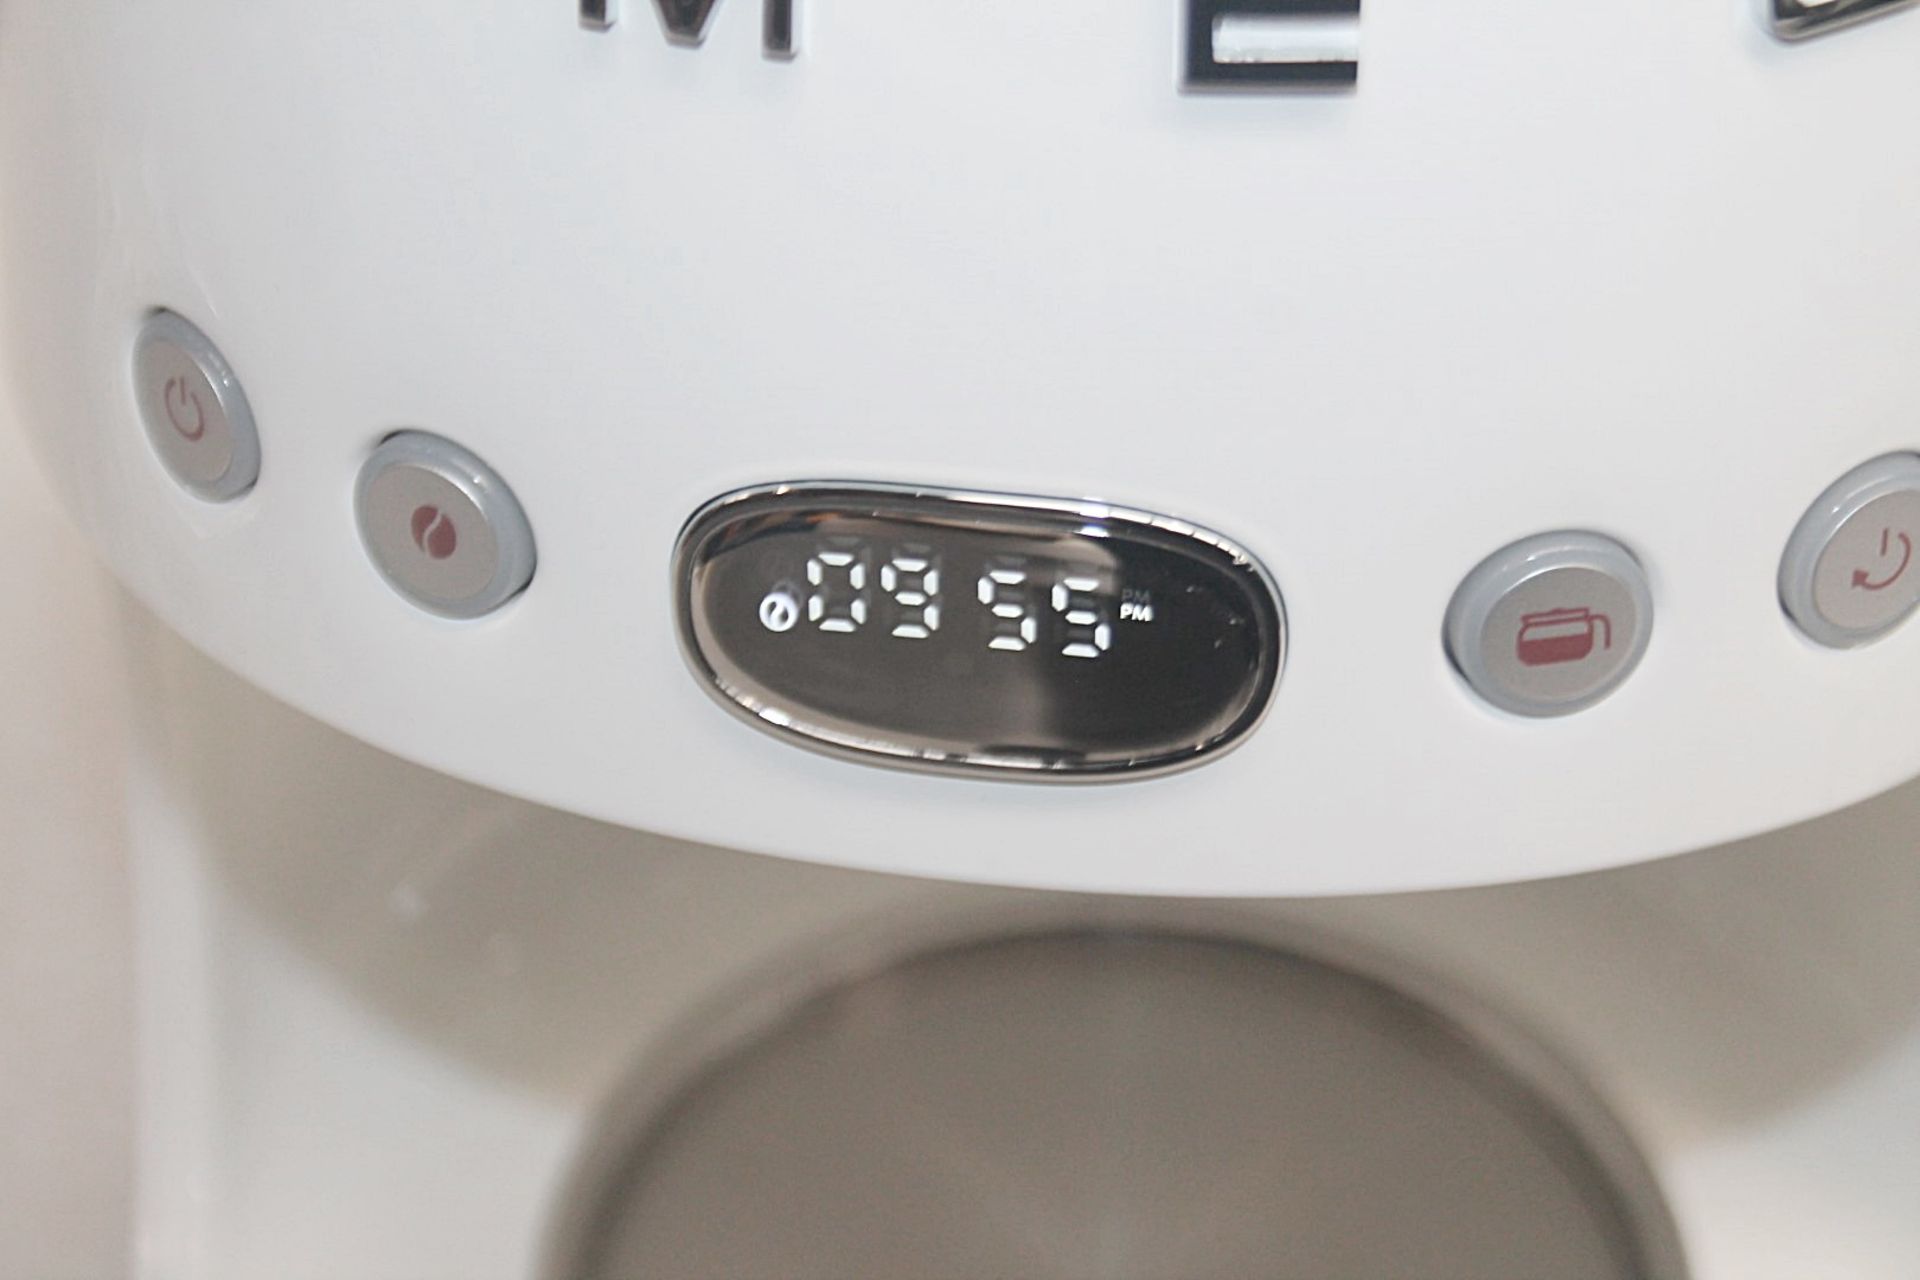 1 x SMEG Drip Retro-Style Filter Coffee Machine, With Digital Display - Original Price £199.00 - Image 5 of 17